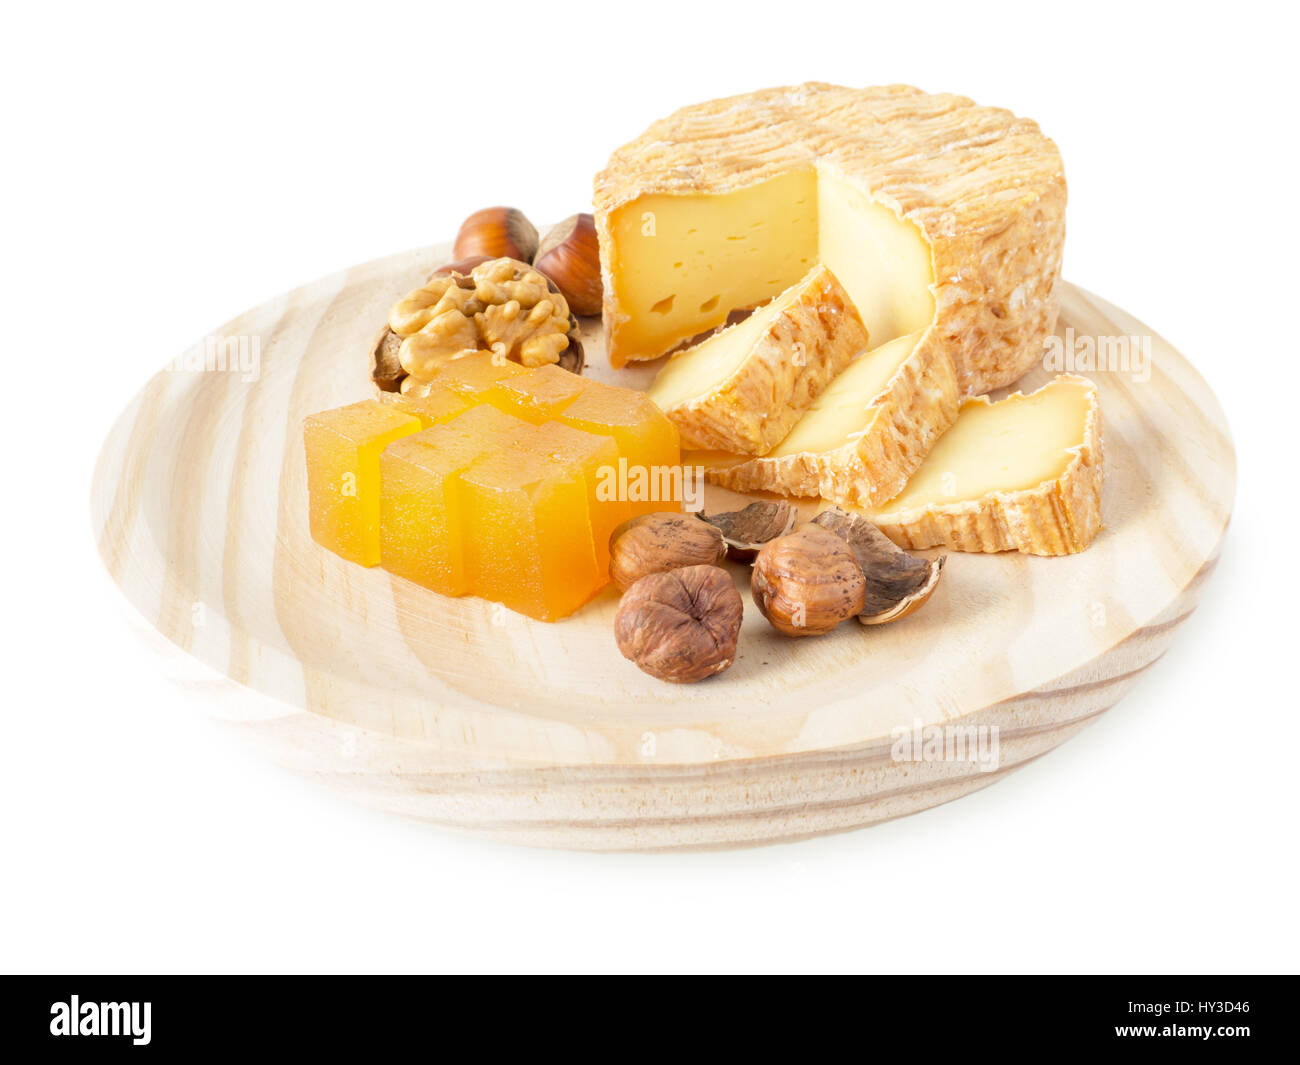 Soft croûte lavée, noisettes, noix et de la marmelade sur la planche de bois texturé isolated on white Banque D'Images